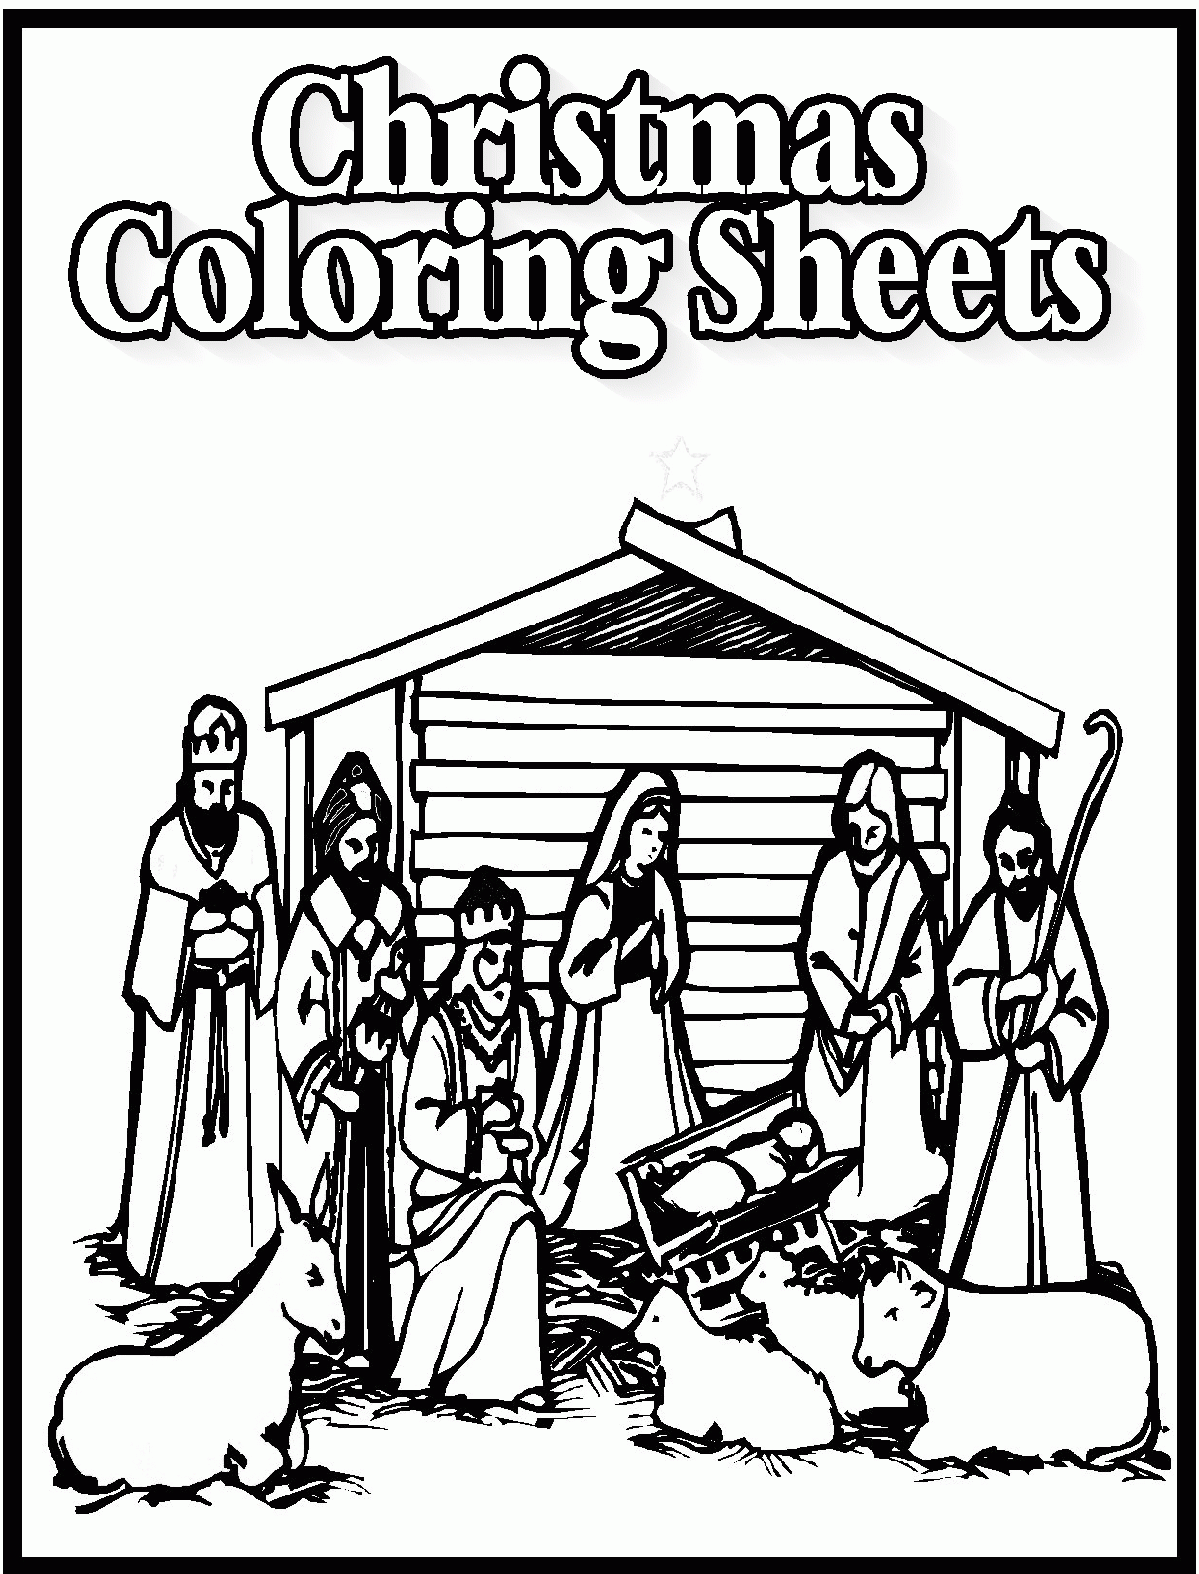 Coloring Online - Part 139